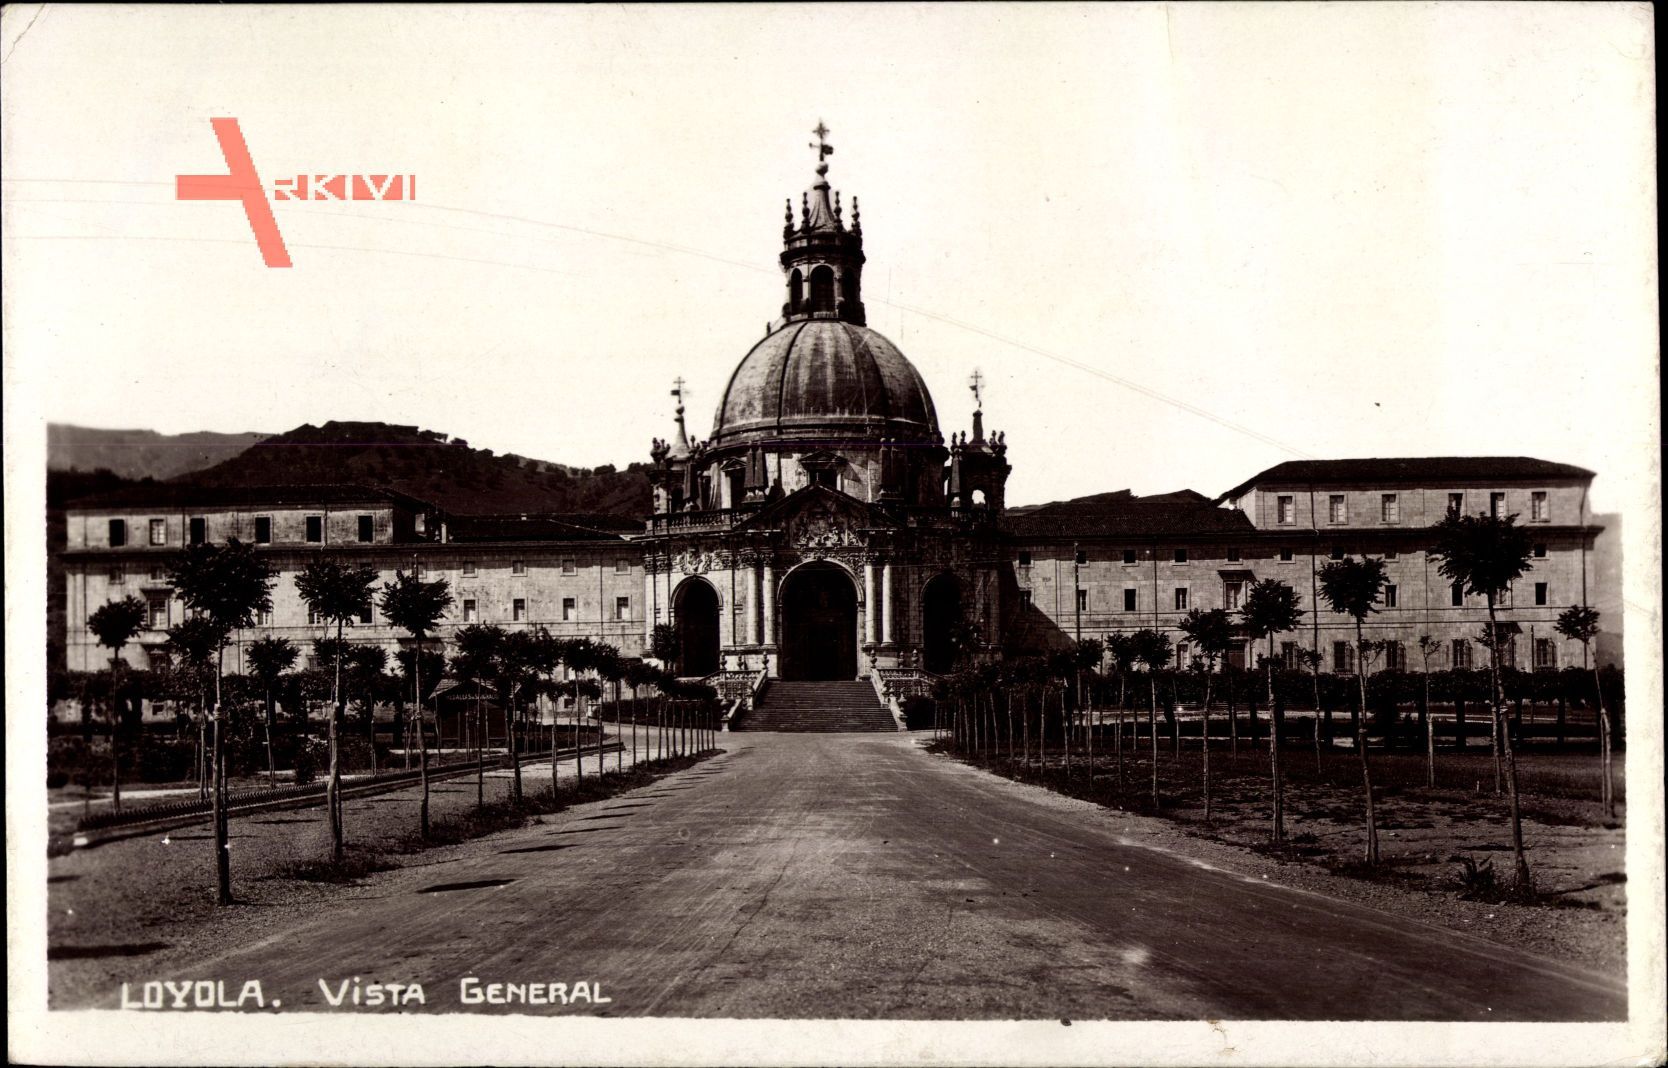 Loyola Baskenland Spanien, Vista General, Santuario de Loyola